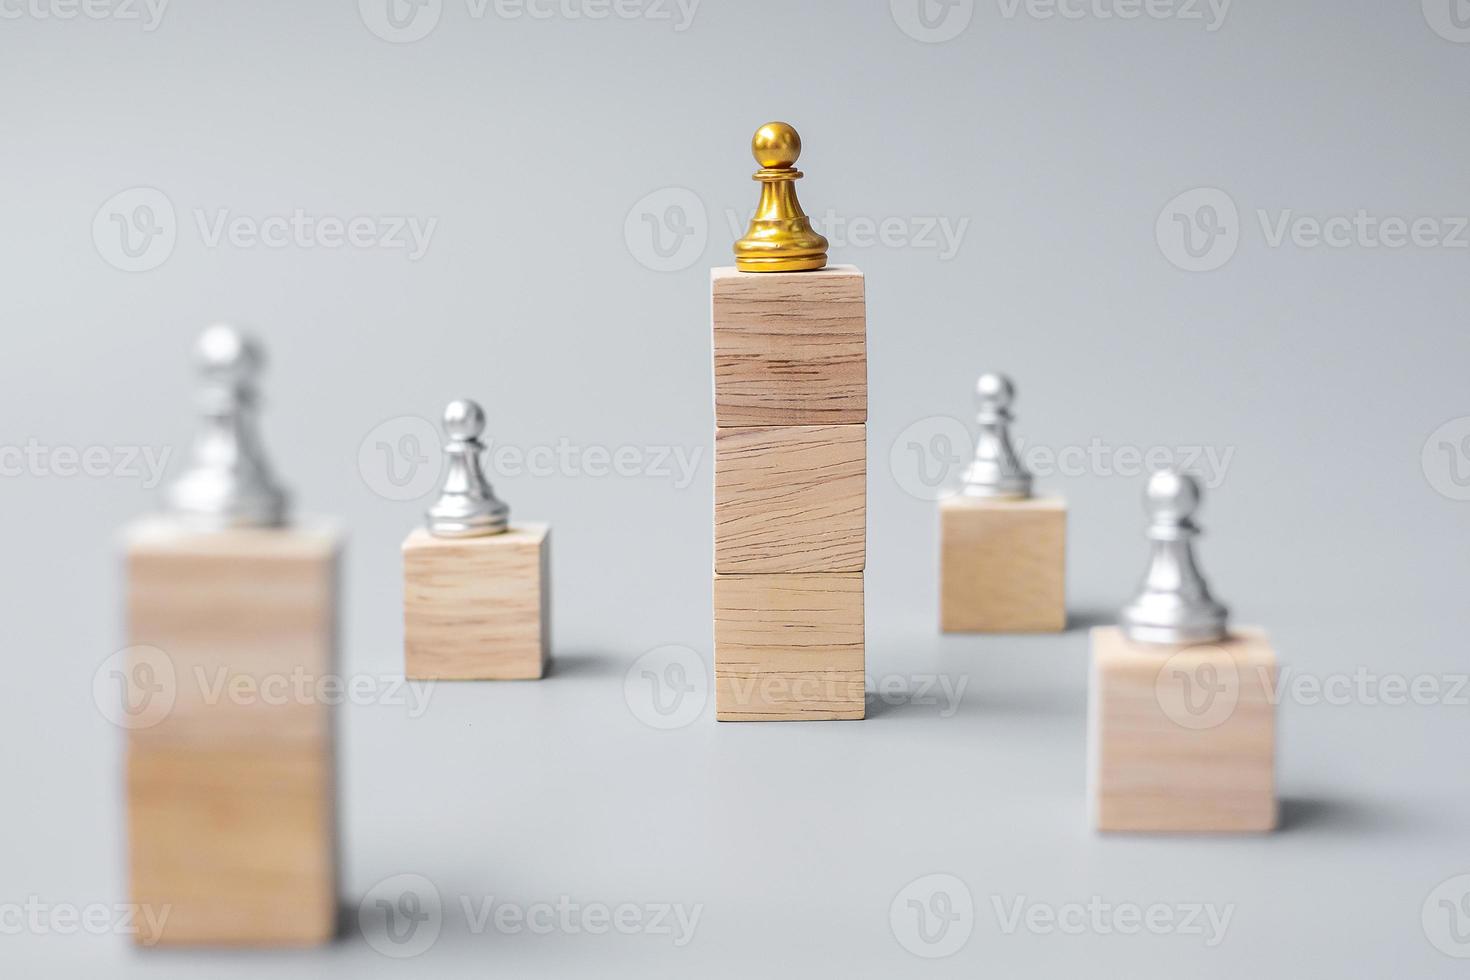 Spitze von goldenen Schachfiguren oder Führergeschäftsmann. Sieg, Führung, Geschäftserfolg, Team, Recruiting und Teamwork-Konzept foto